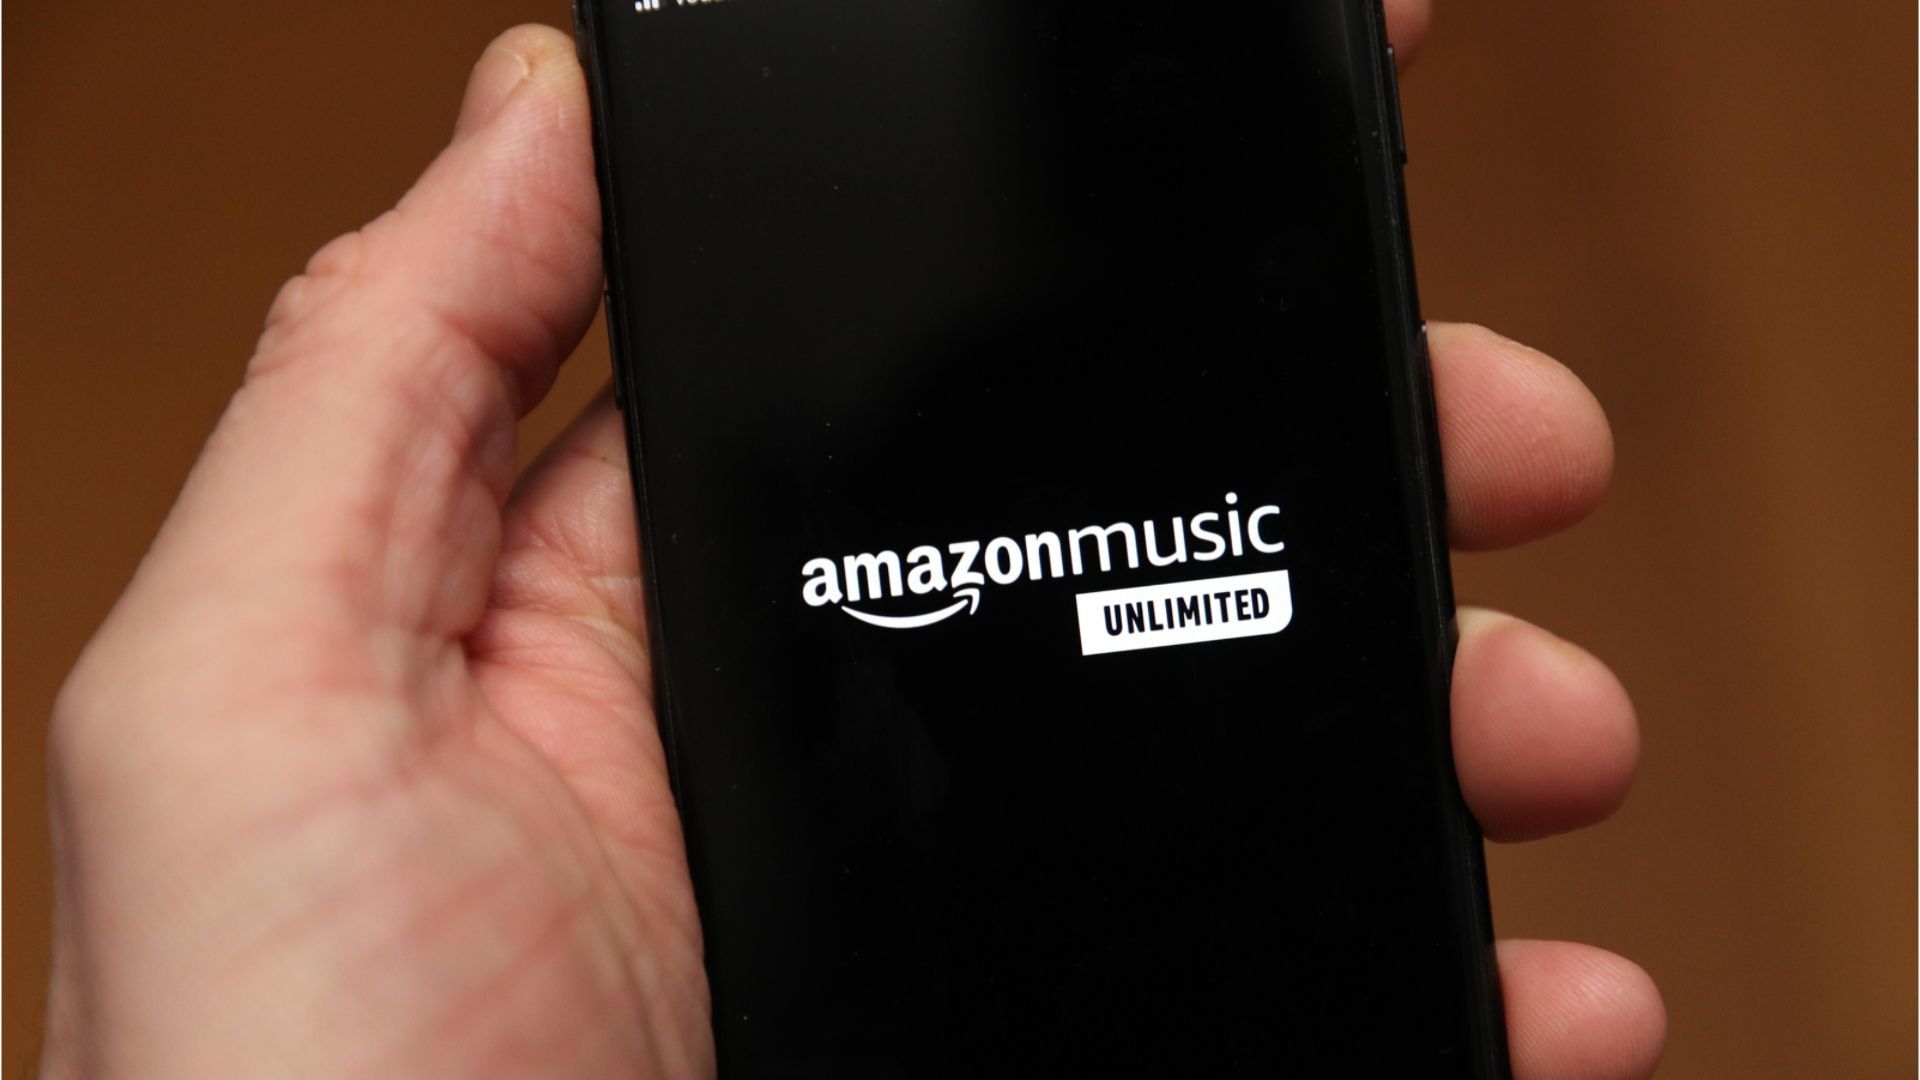 Amazon erhöht die Abo-Preise für Streamingdienst - auch Studenten betroffen